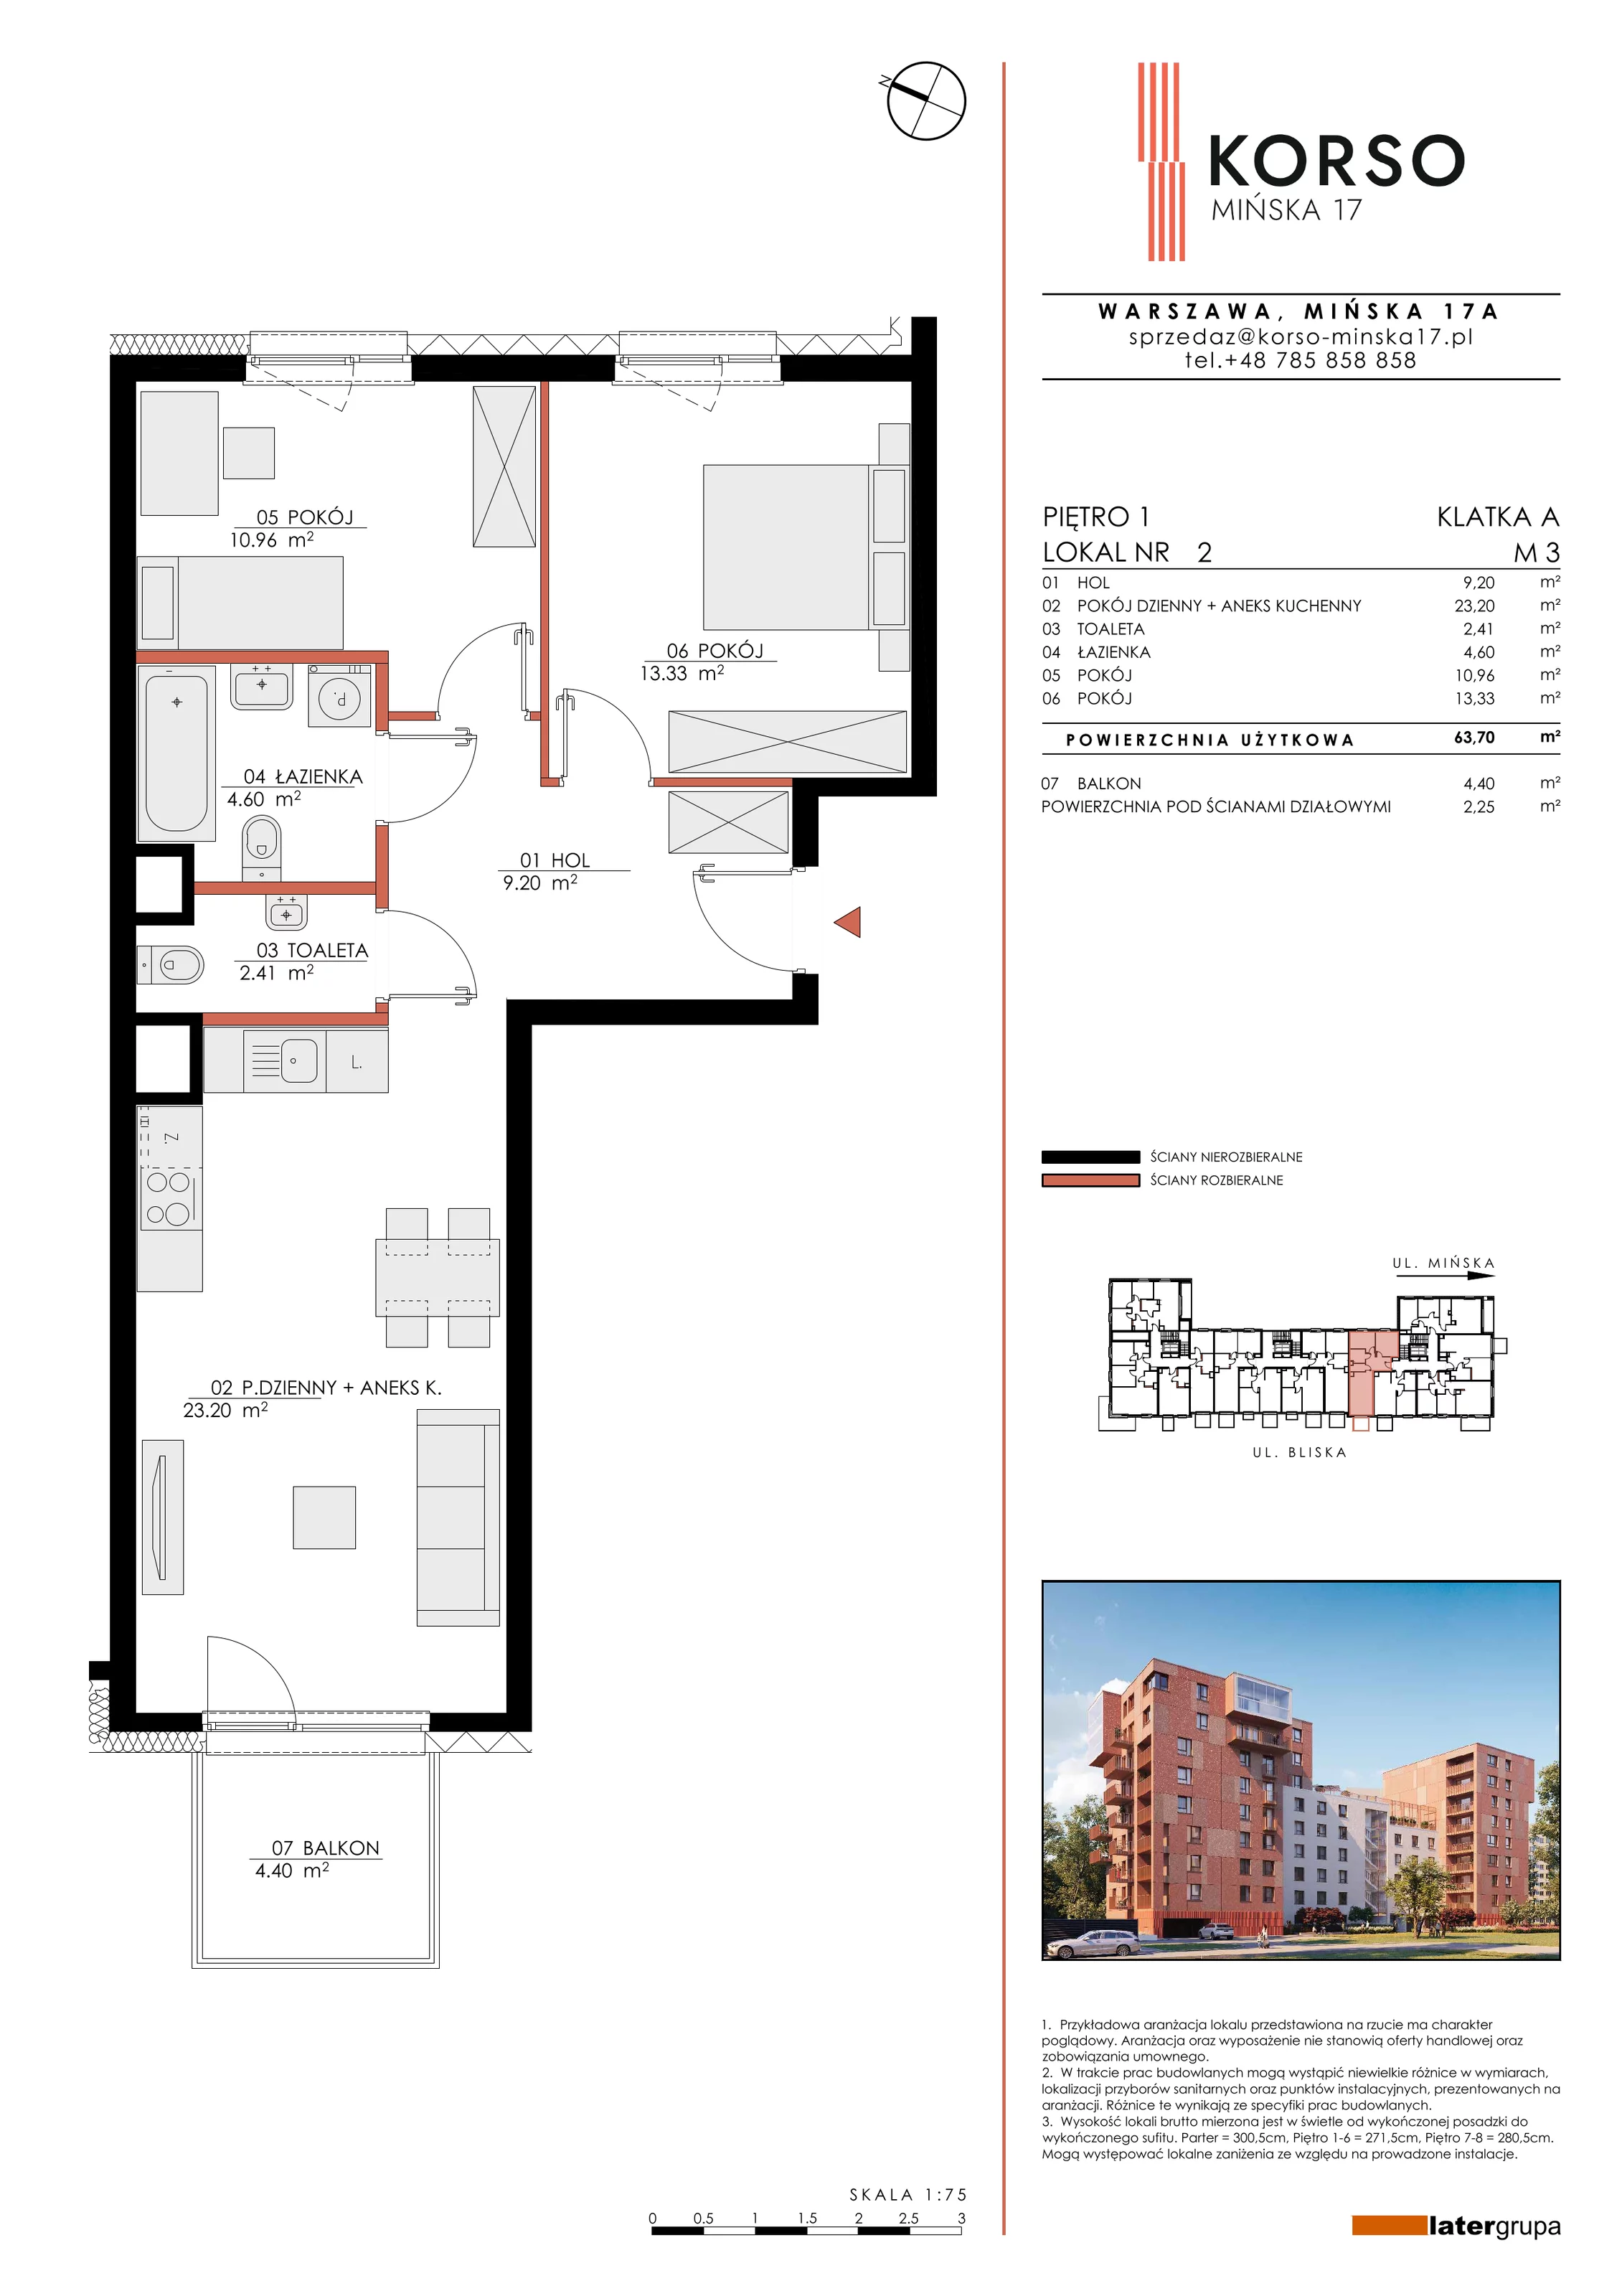 Mieszkanie 63,70 m², piętro 1, oferta nr 2, KORSO Mińska 17, Warszawa, Praga Południe, Kamionek, ul. Mińska 17